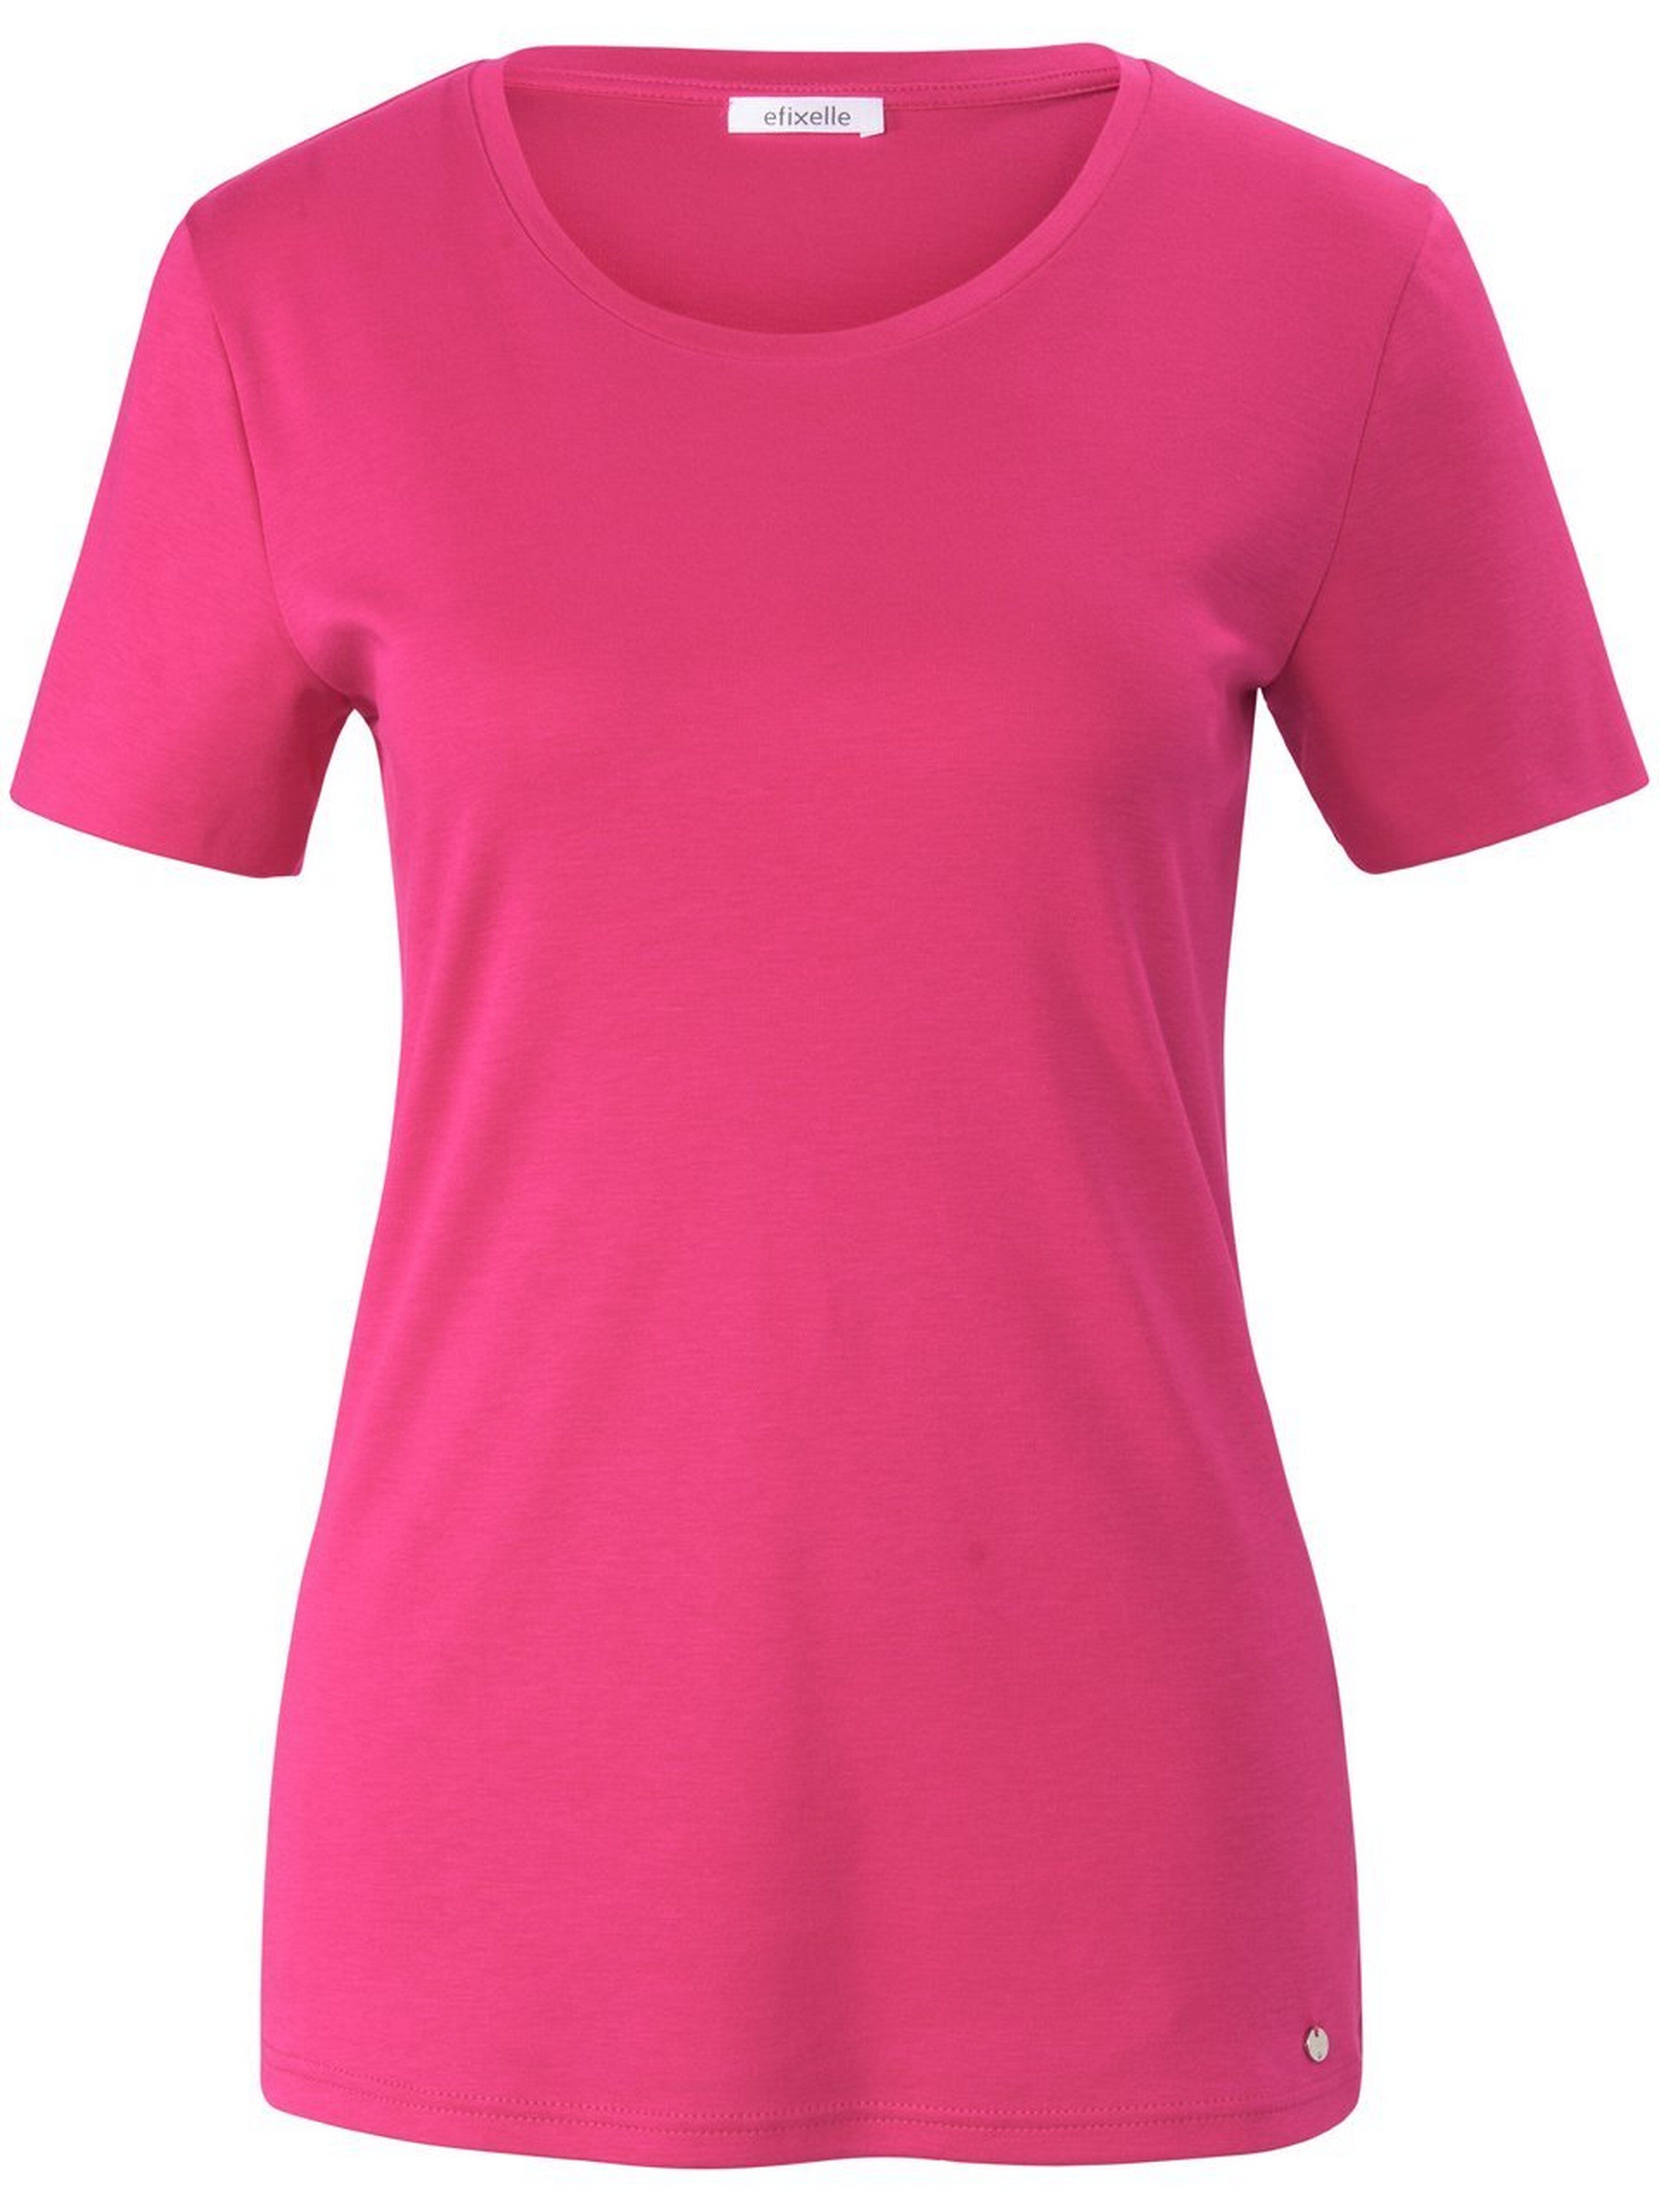 Efixelle Rundhals-Shirt 1/2-Arm Efixelle pink Damen 40